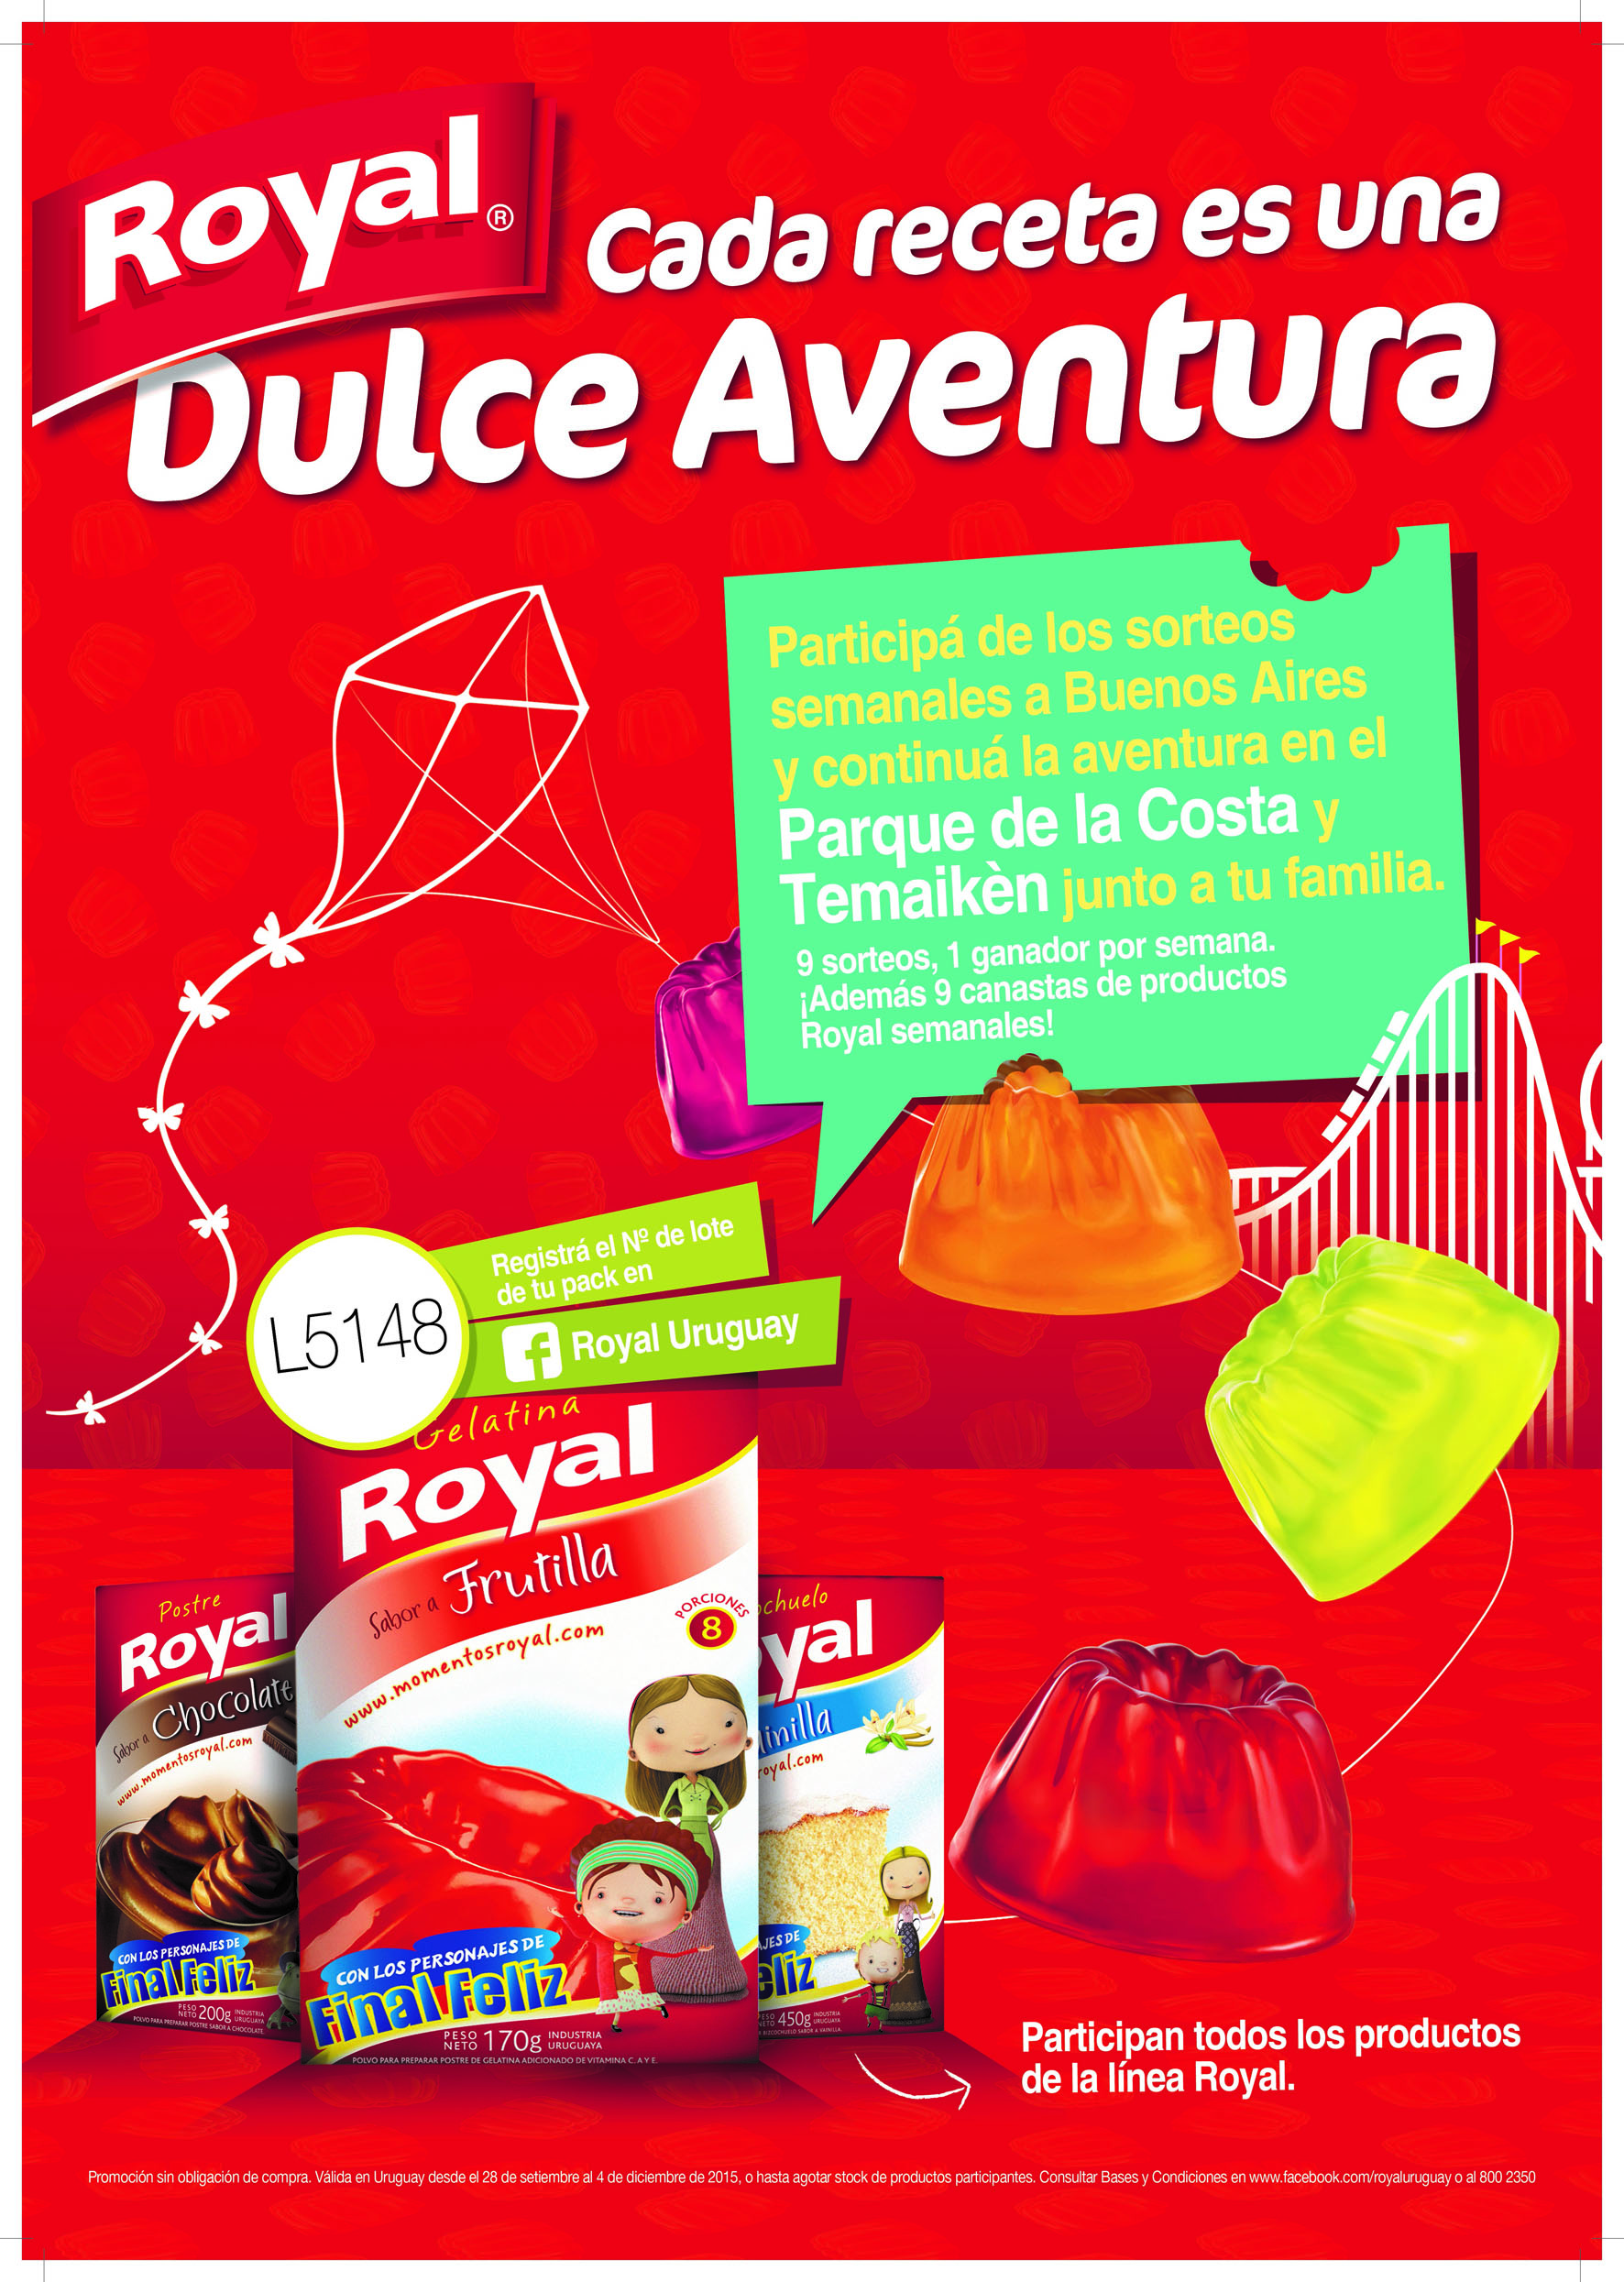 Royal invita a vivir una “dulce aventura” en Buenos Aires